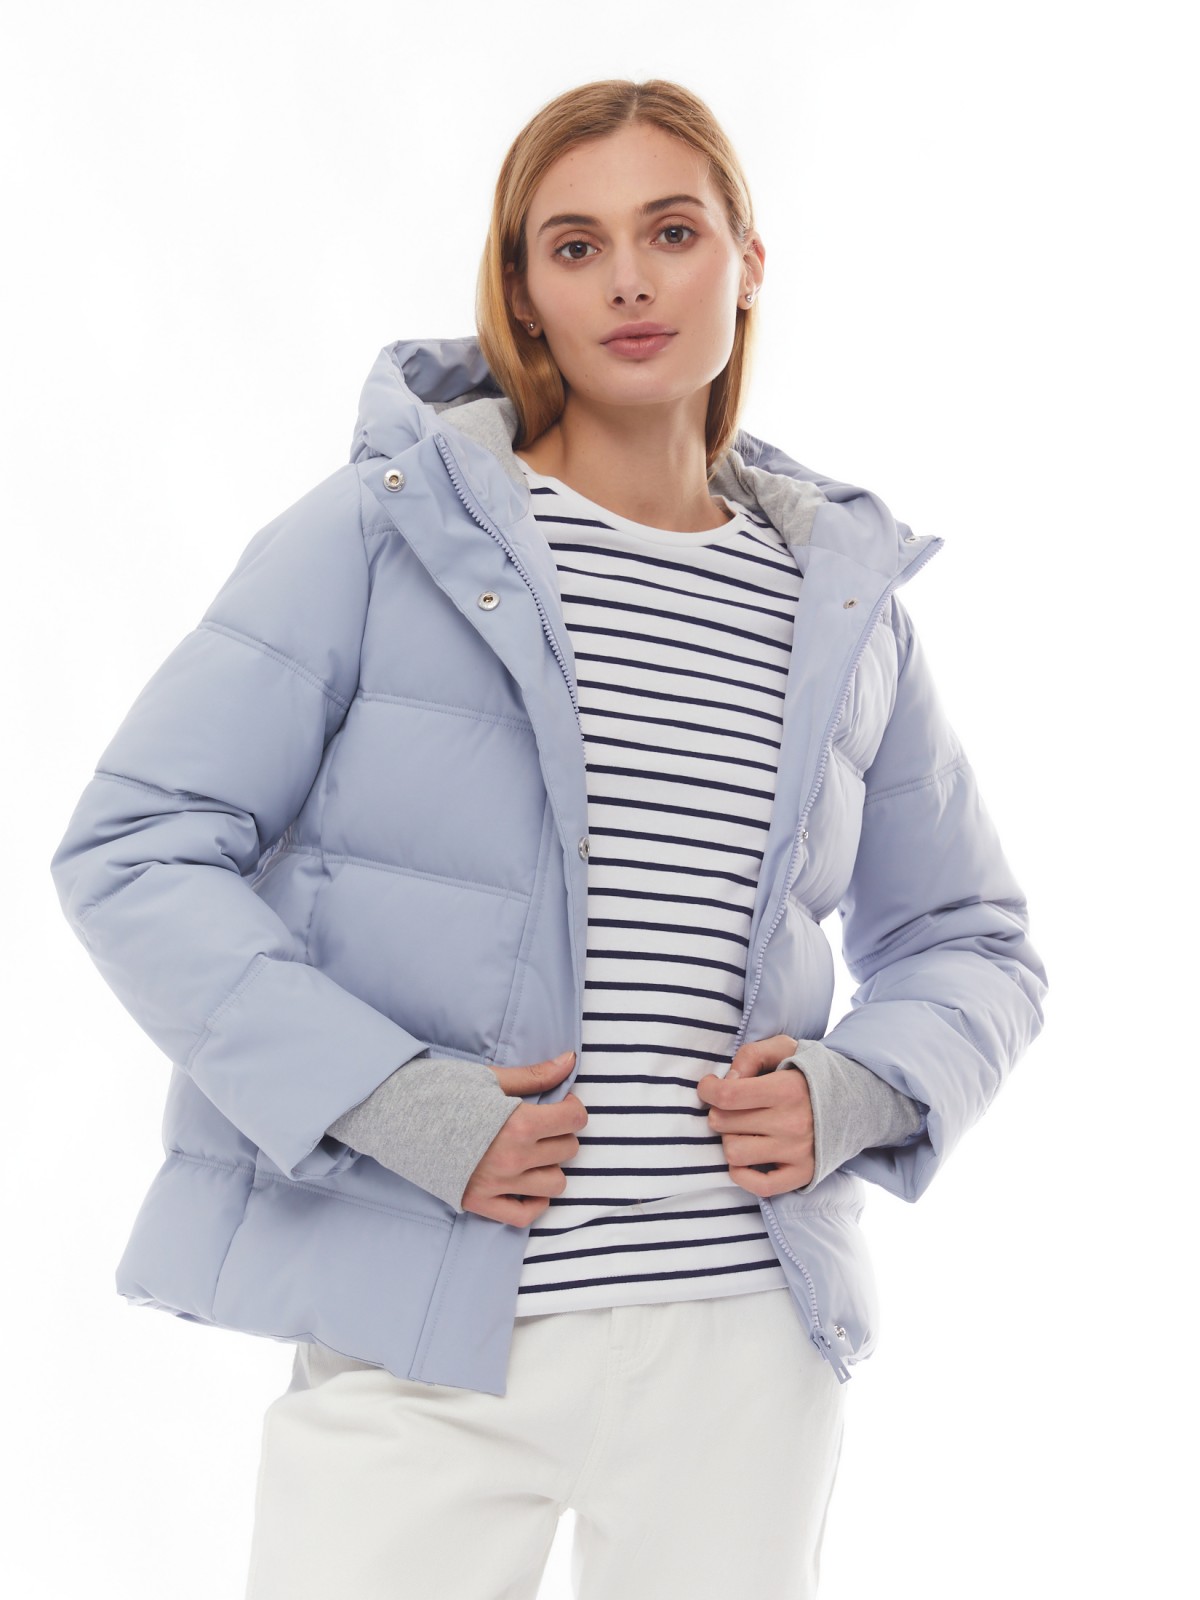 Утеплённая стёганая куртка укороченного фасона с капюшоном zolla 024125102064, цвет светло-голубой, размер XS